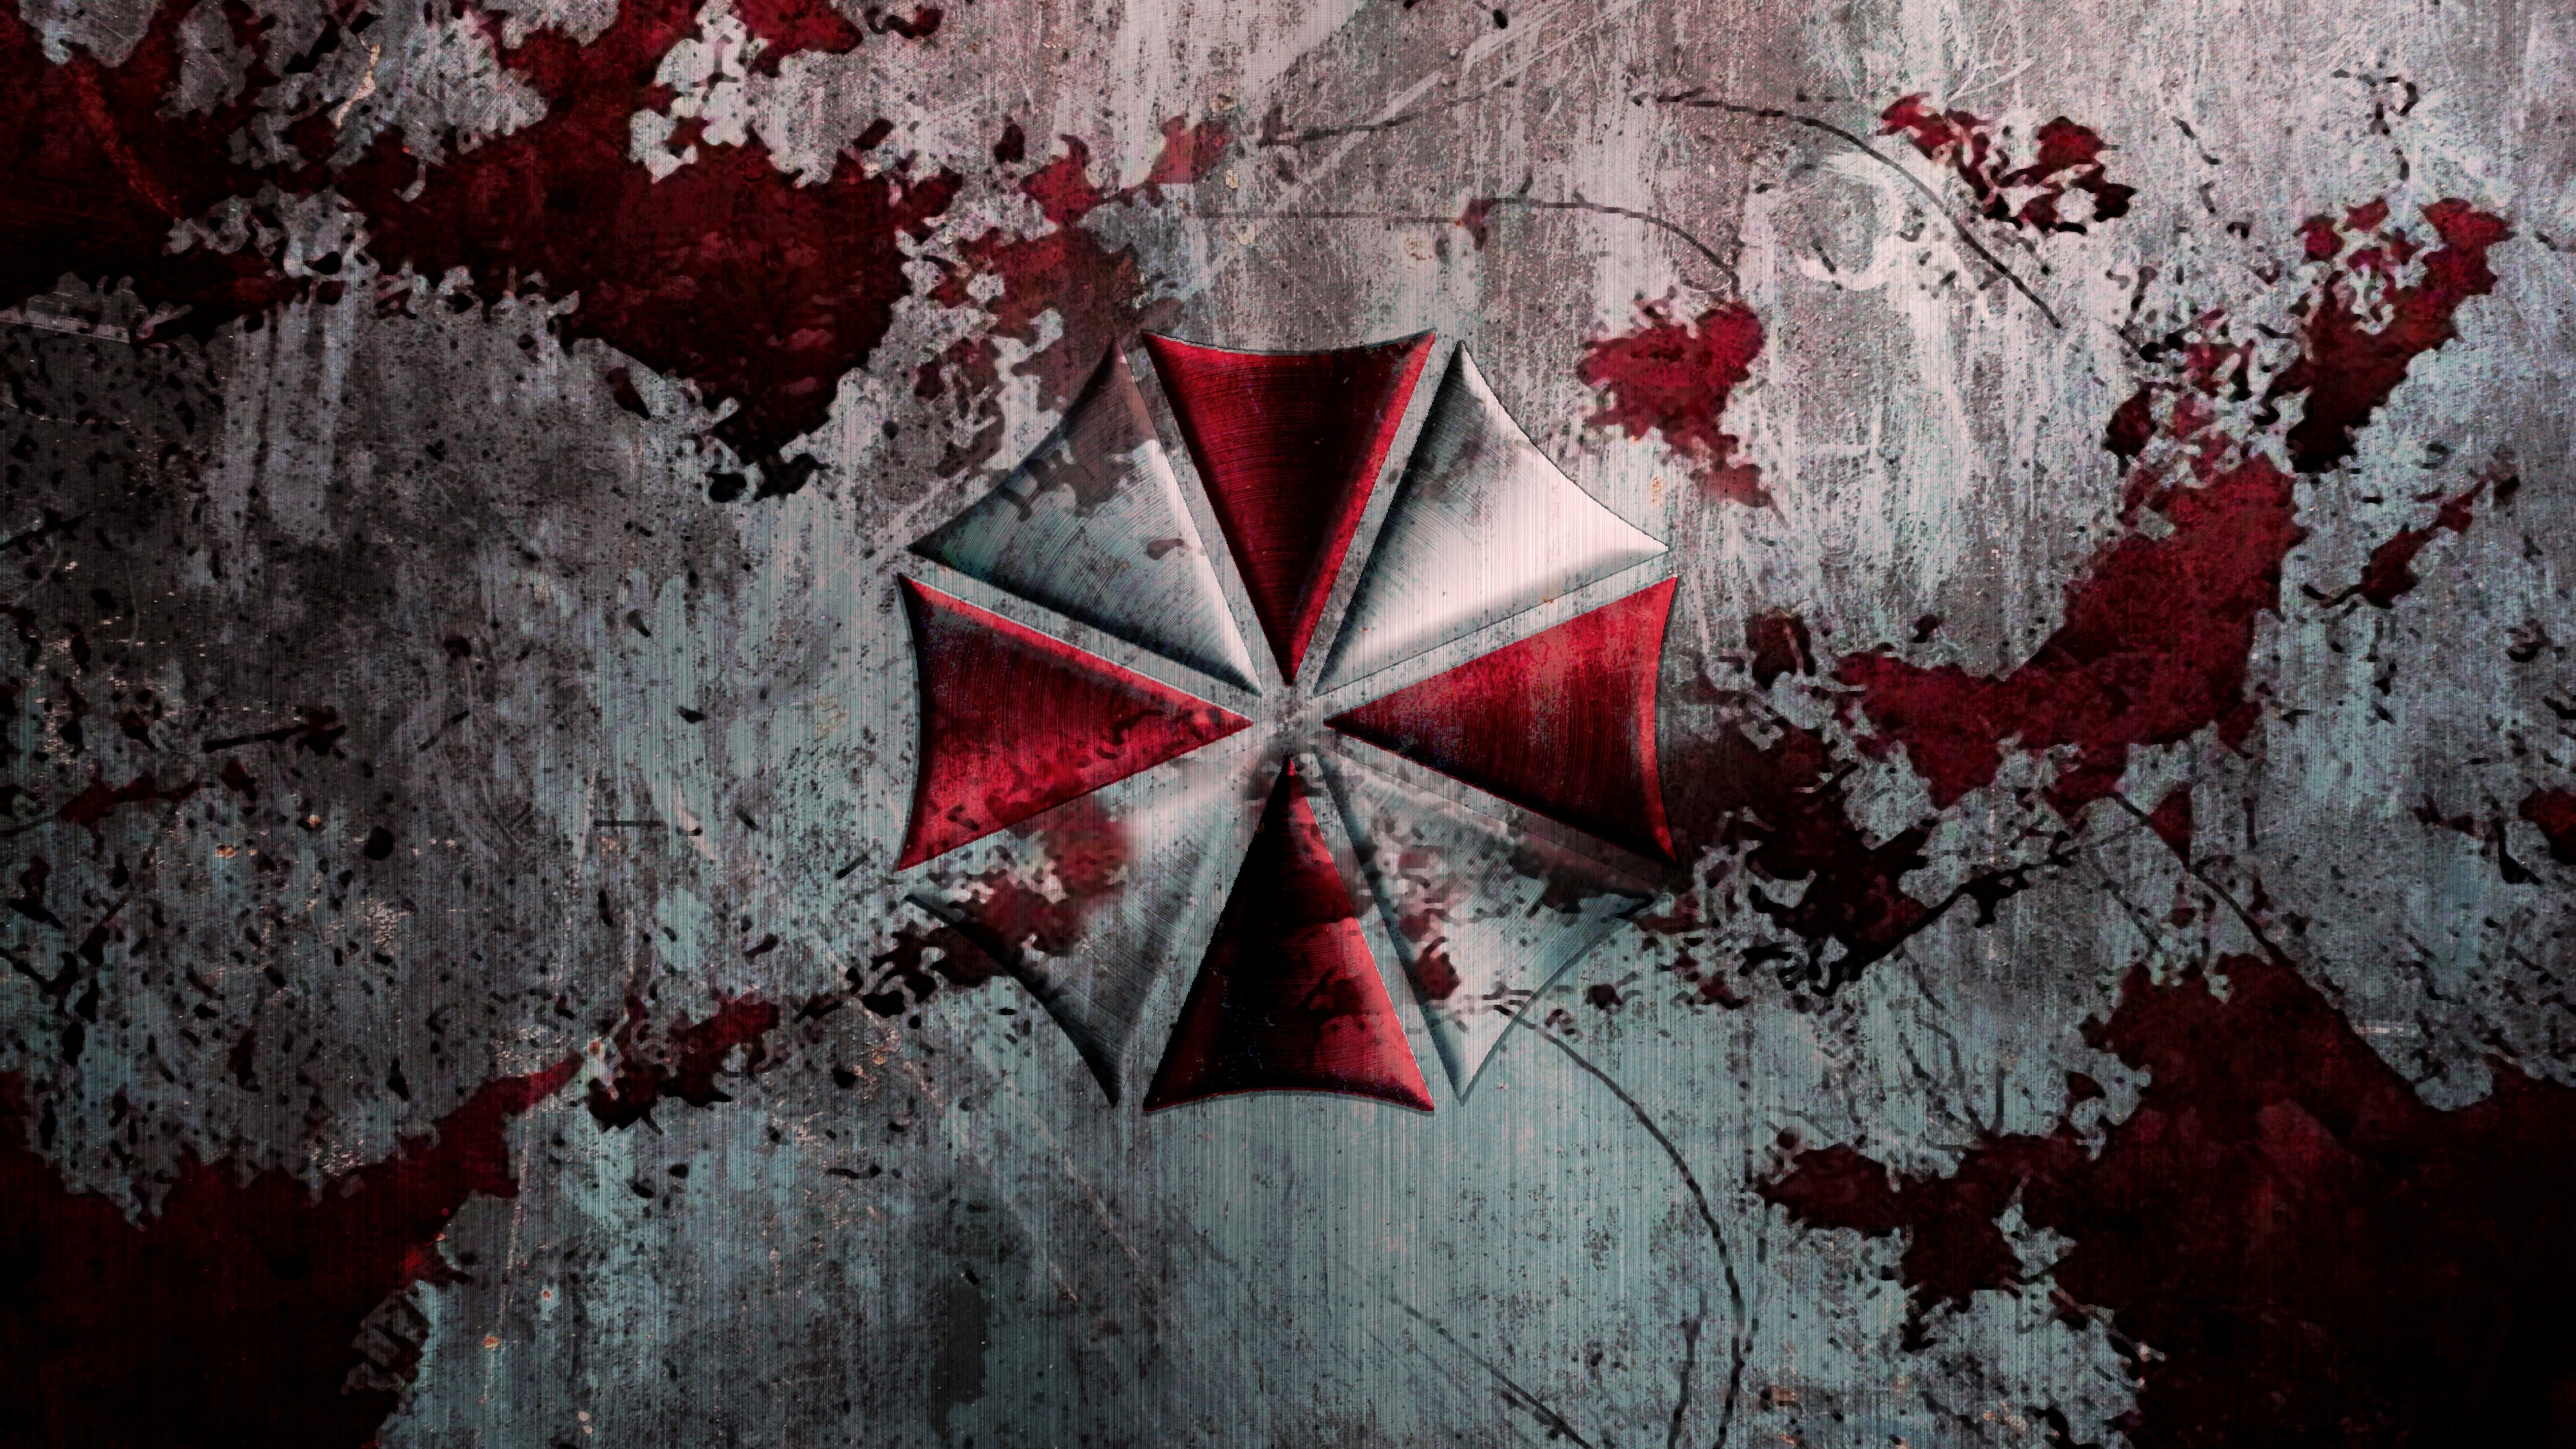 Resident Evil HD Wallpaper